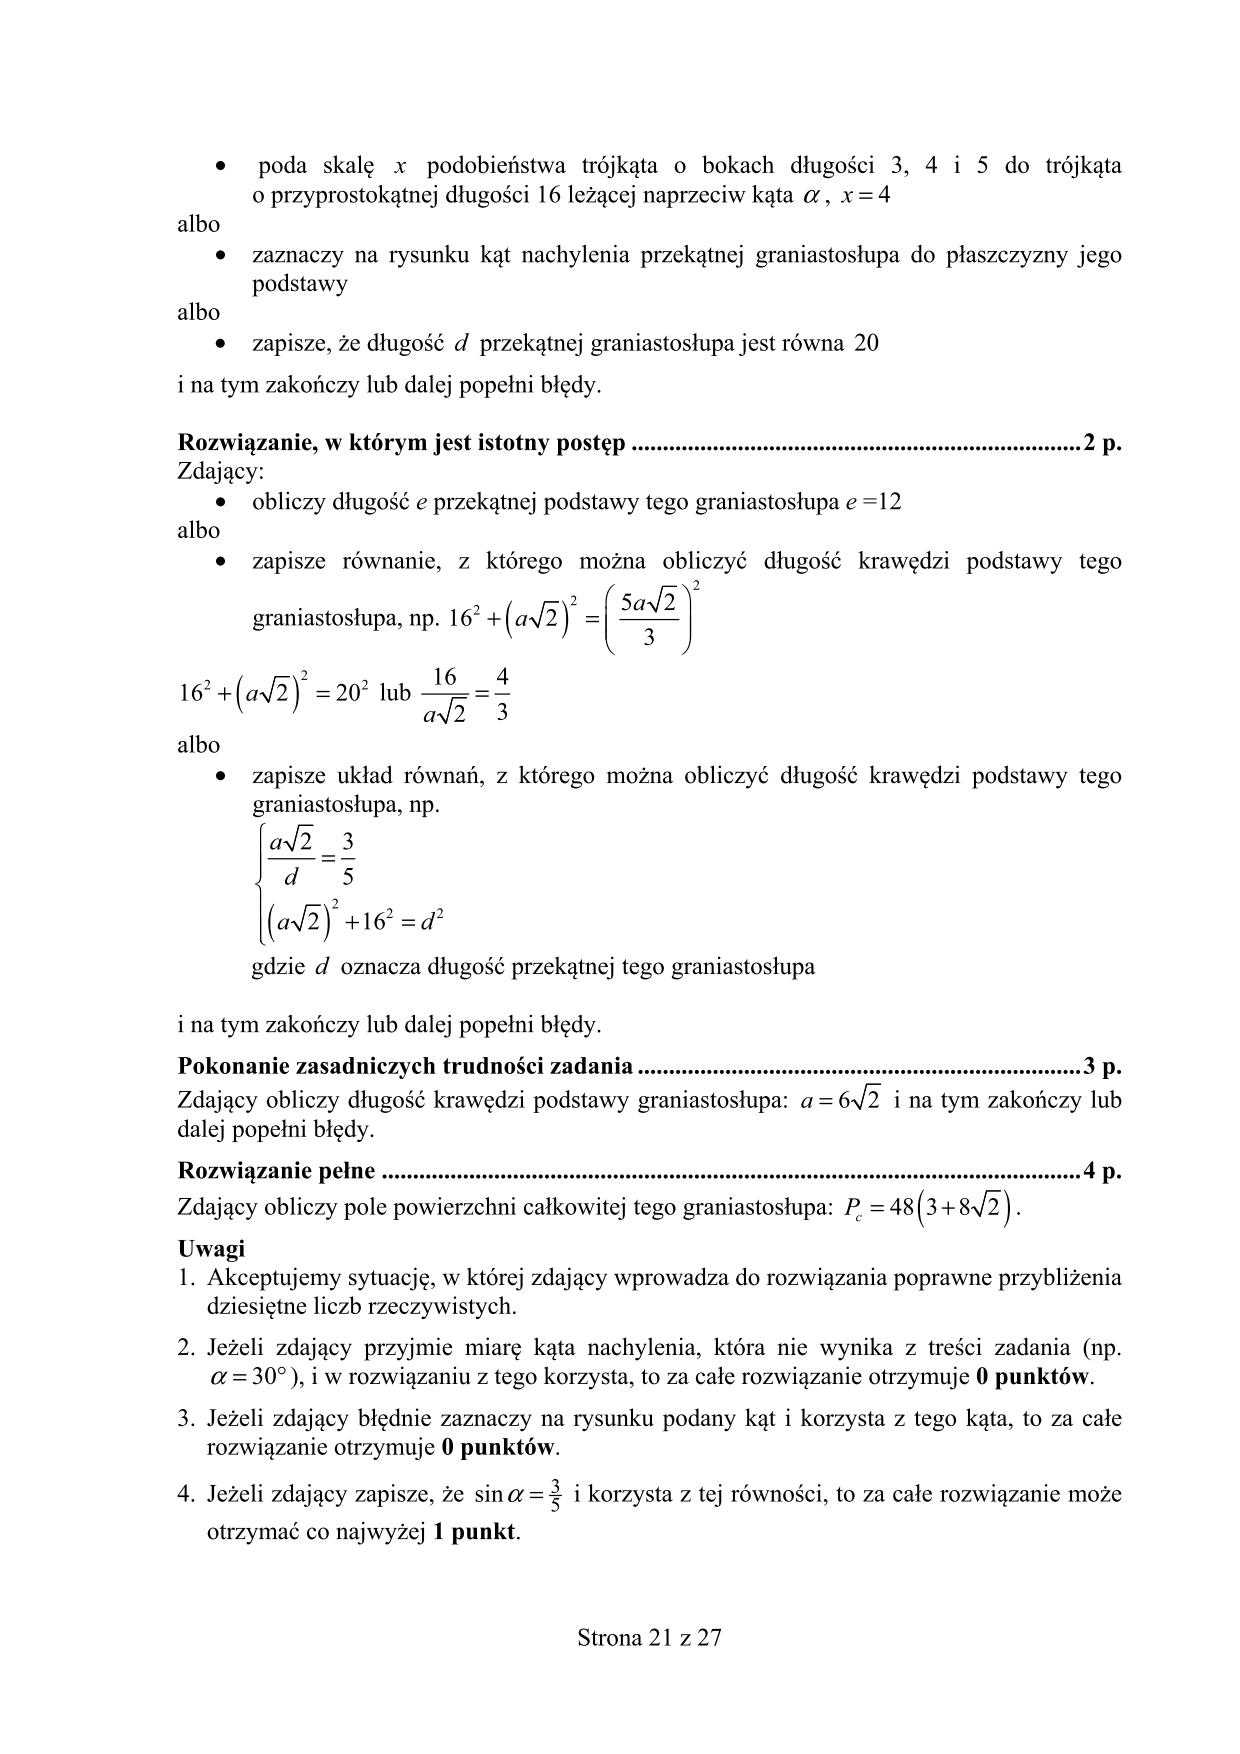 odpowiedzi-matematyka-poziom-podstawowy-matura-2015-21